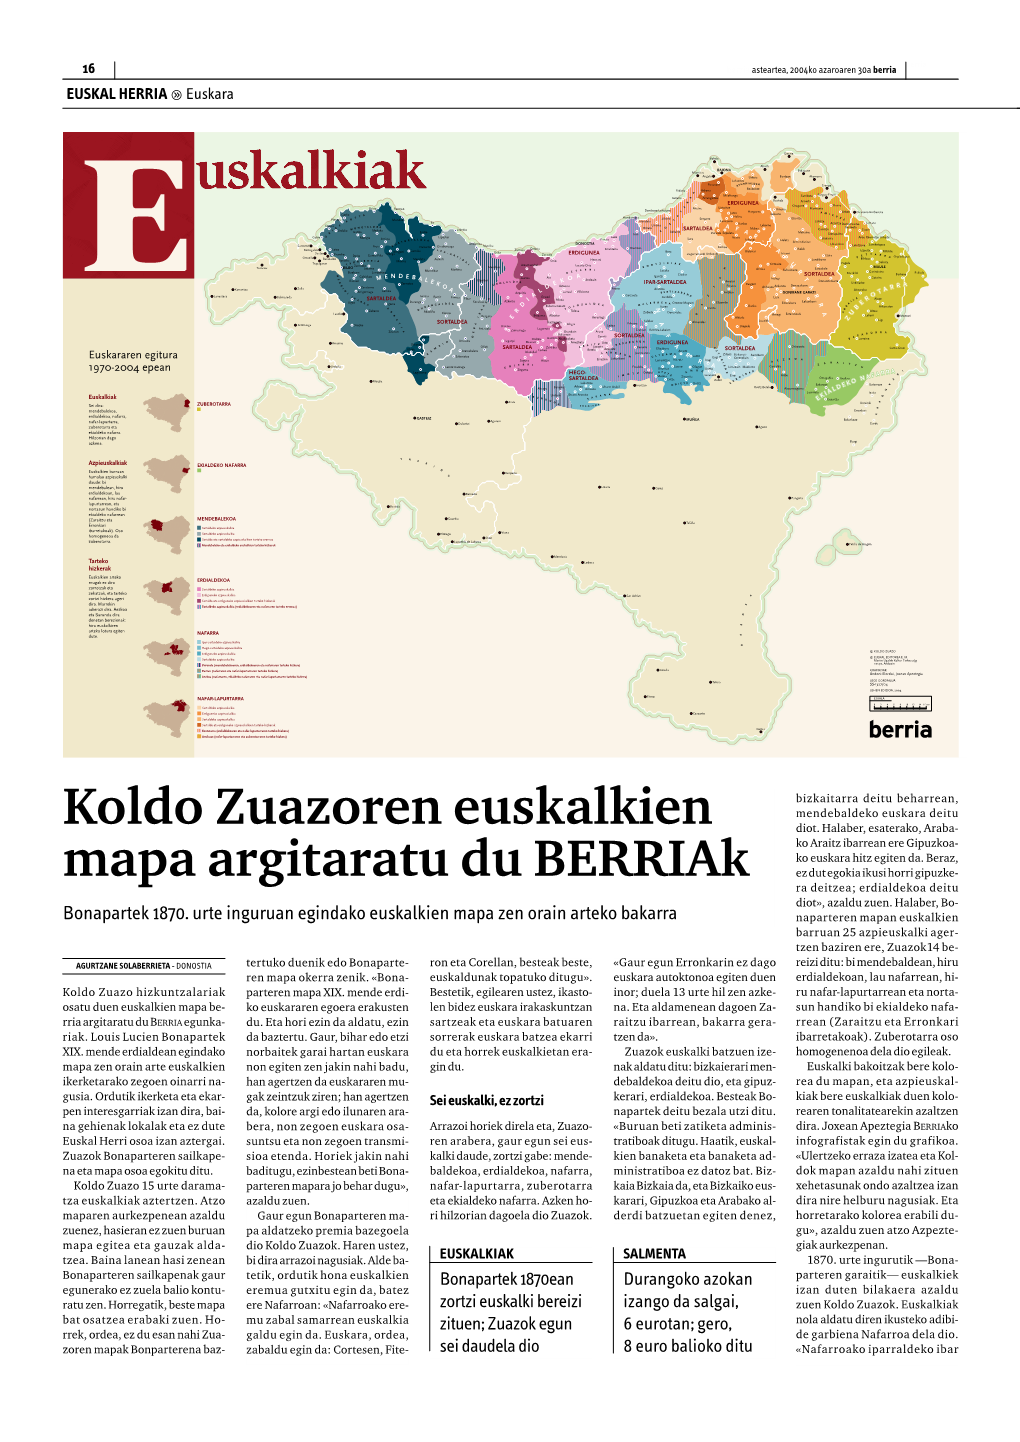 Koldo Zuazoren Euskalkien Mapa Argitaratu Du Berriak